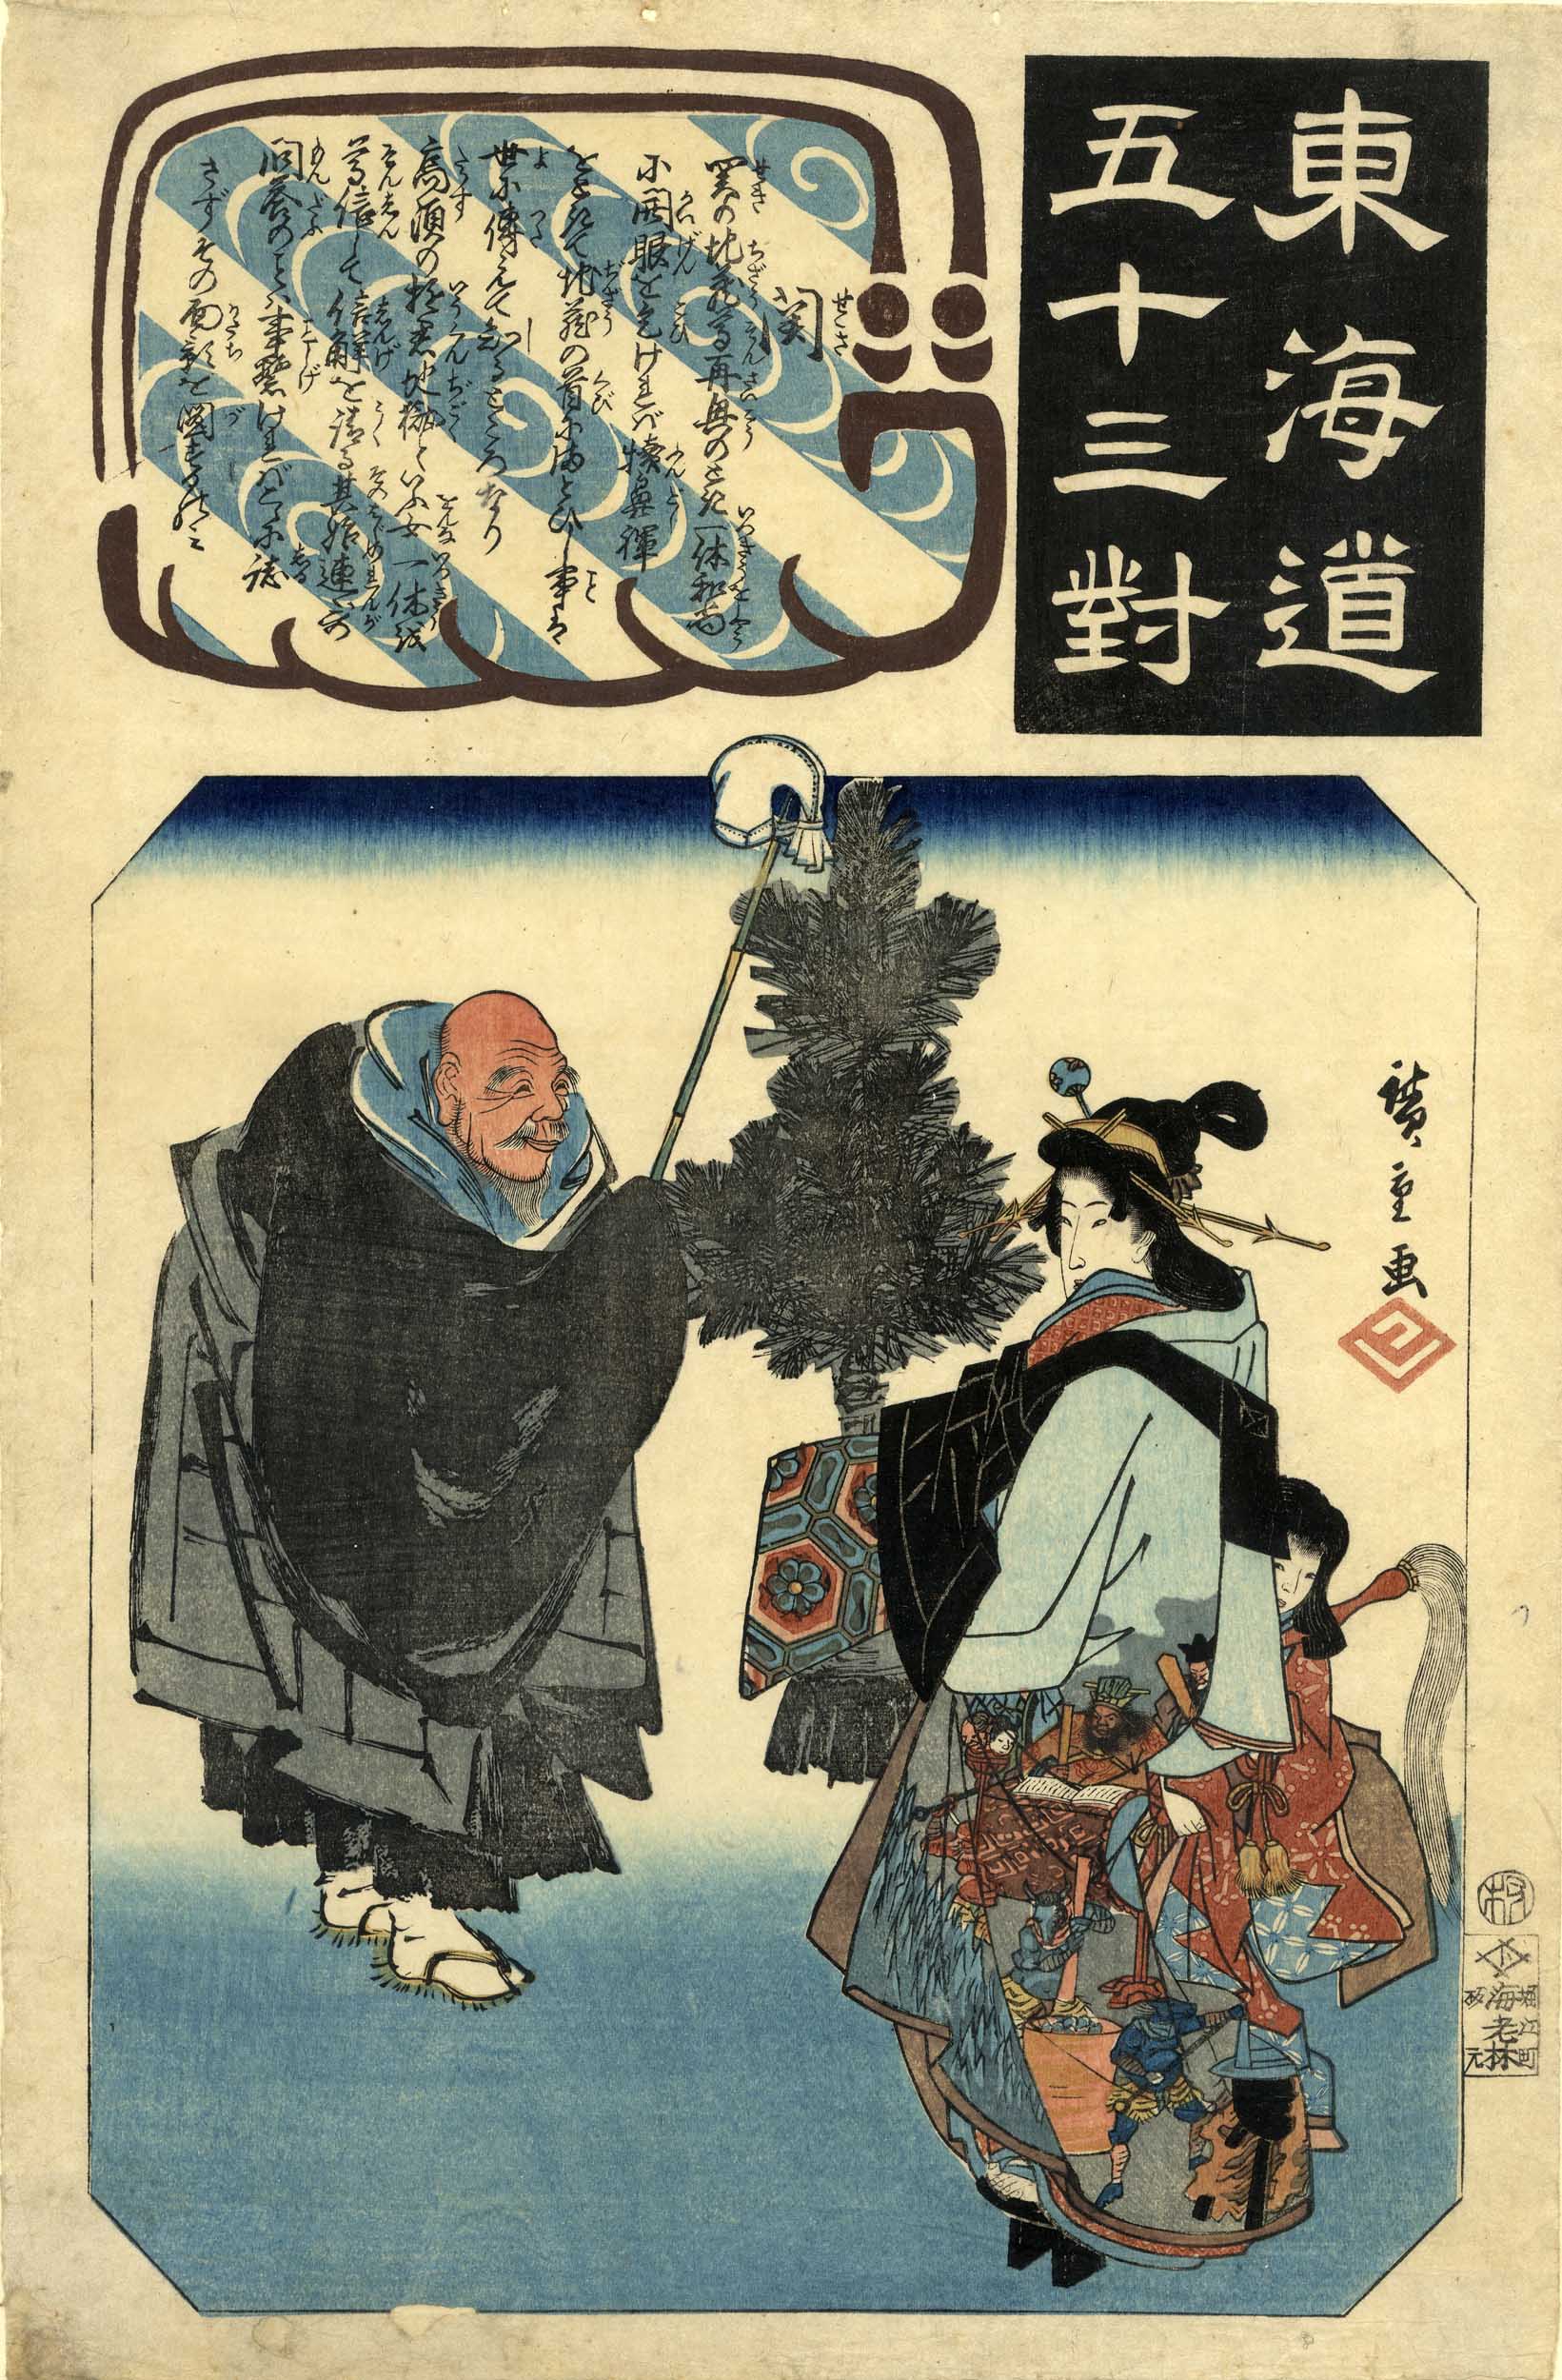 Hiroshige, Utagawa  1797-1858  Bijinga (Oban, 1843-45)  Aus der Serie "Tokaido gojusan Tsui" (